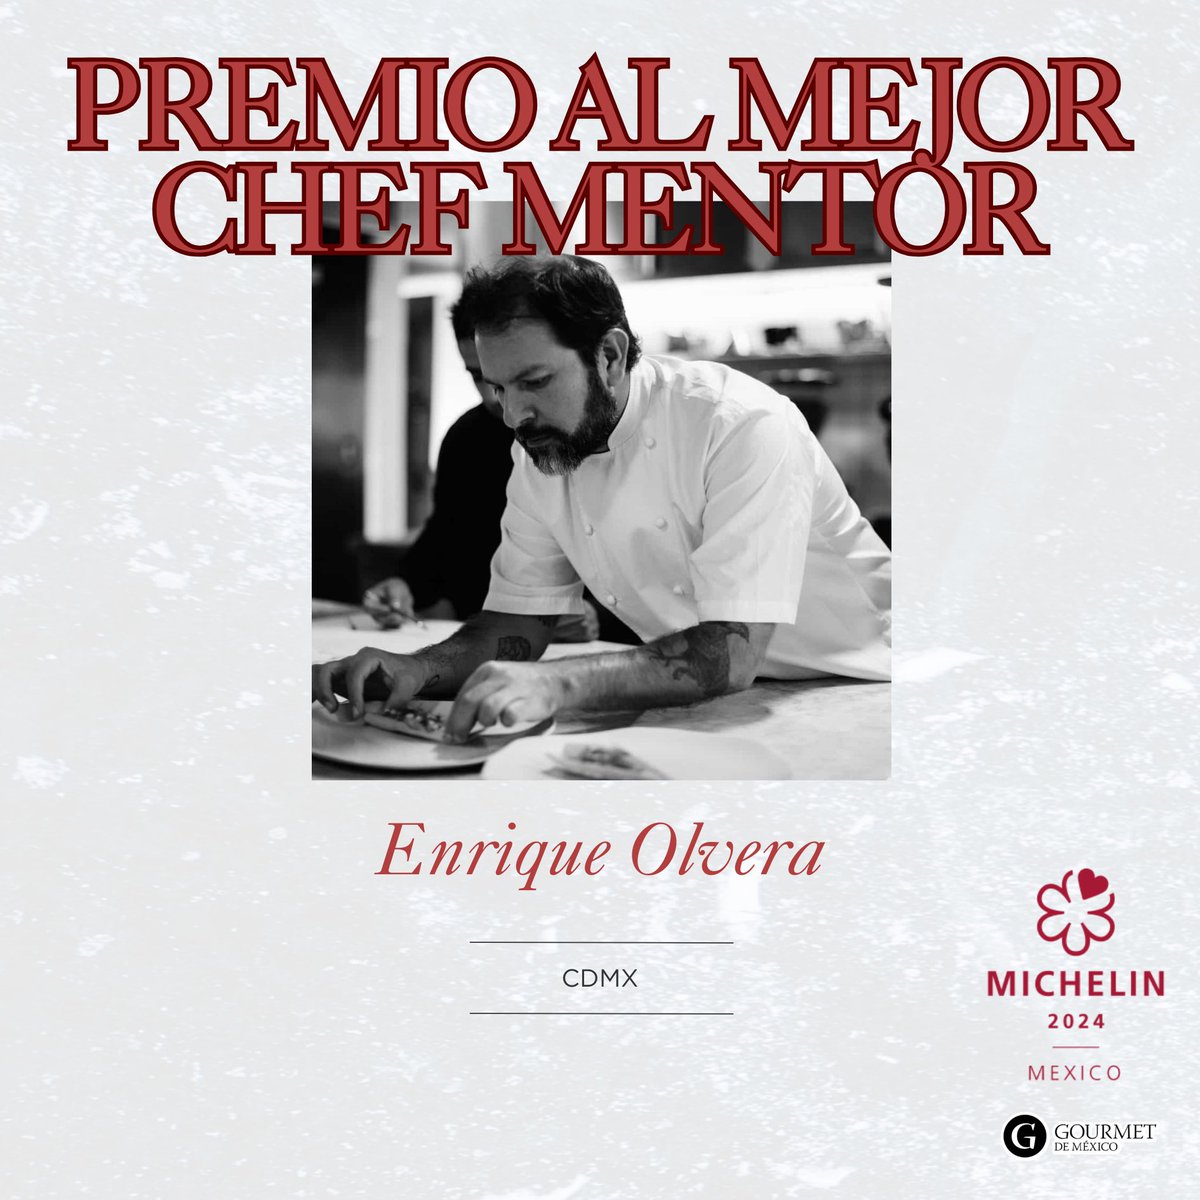 ¡Felicidades @enriqueolvera  por el reconocimiento al mejor chef mentor! Un reconocimiento a su creatividad y maestría en la cocina. 🌟👩‍🍳 #MichelinGuideMX #MichelinStar24 @GuiaMichelin_ES @MichelinMEX